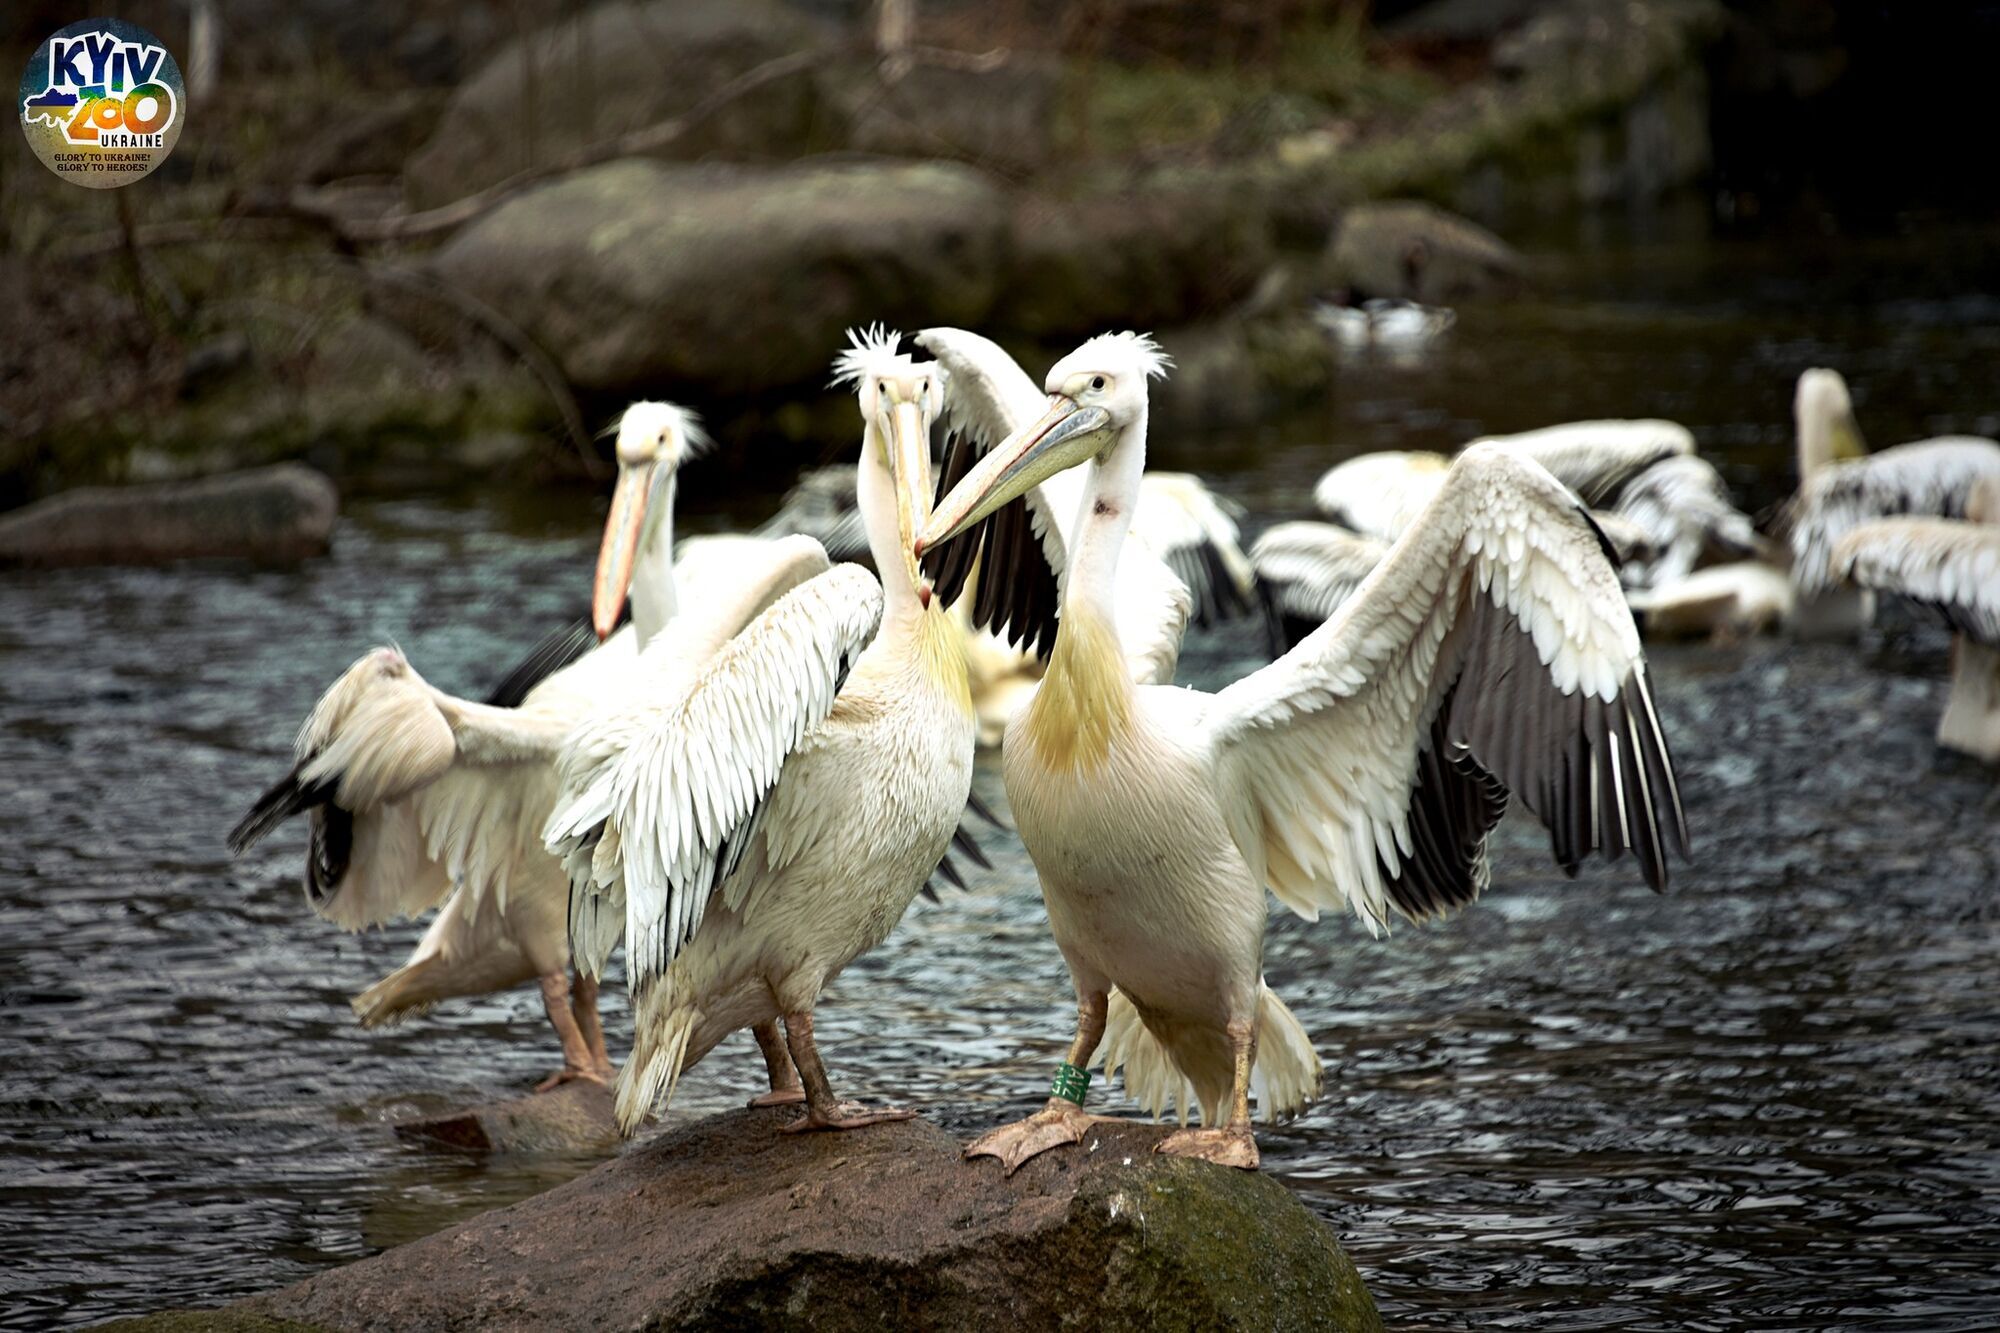 В Киевском зоопарке благодаря погоде на воду выпустили большую семью пеликанов. Фото и видео